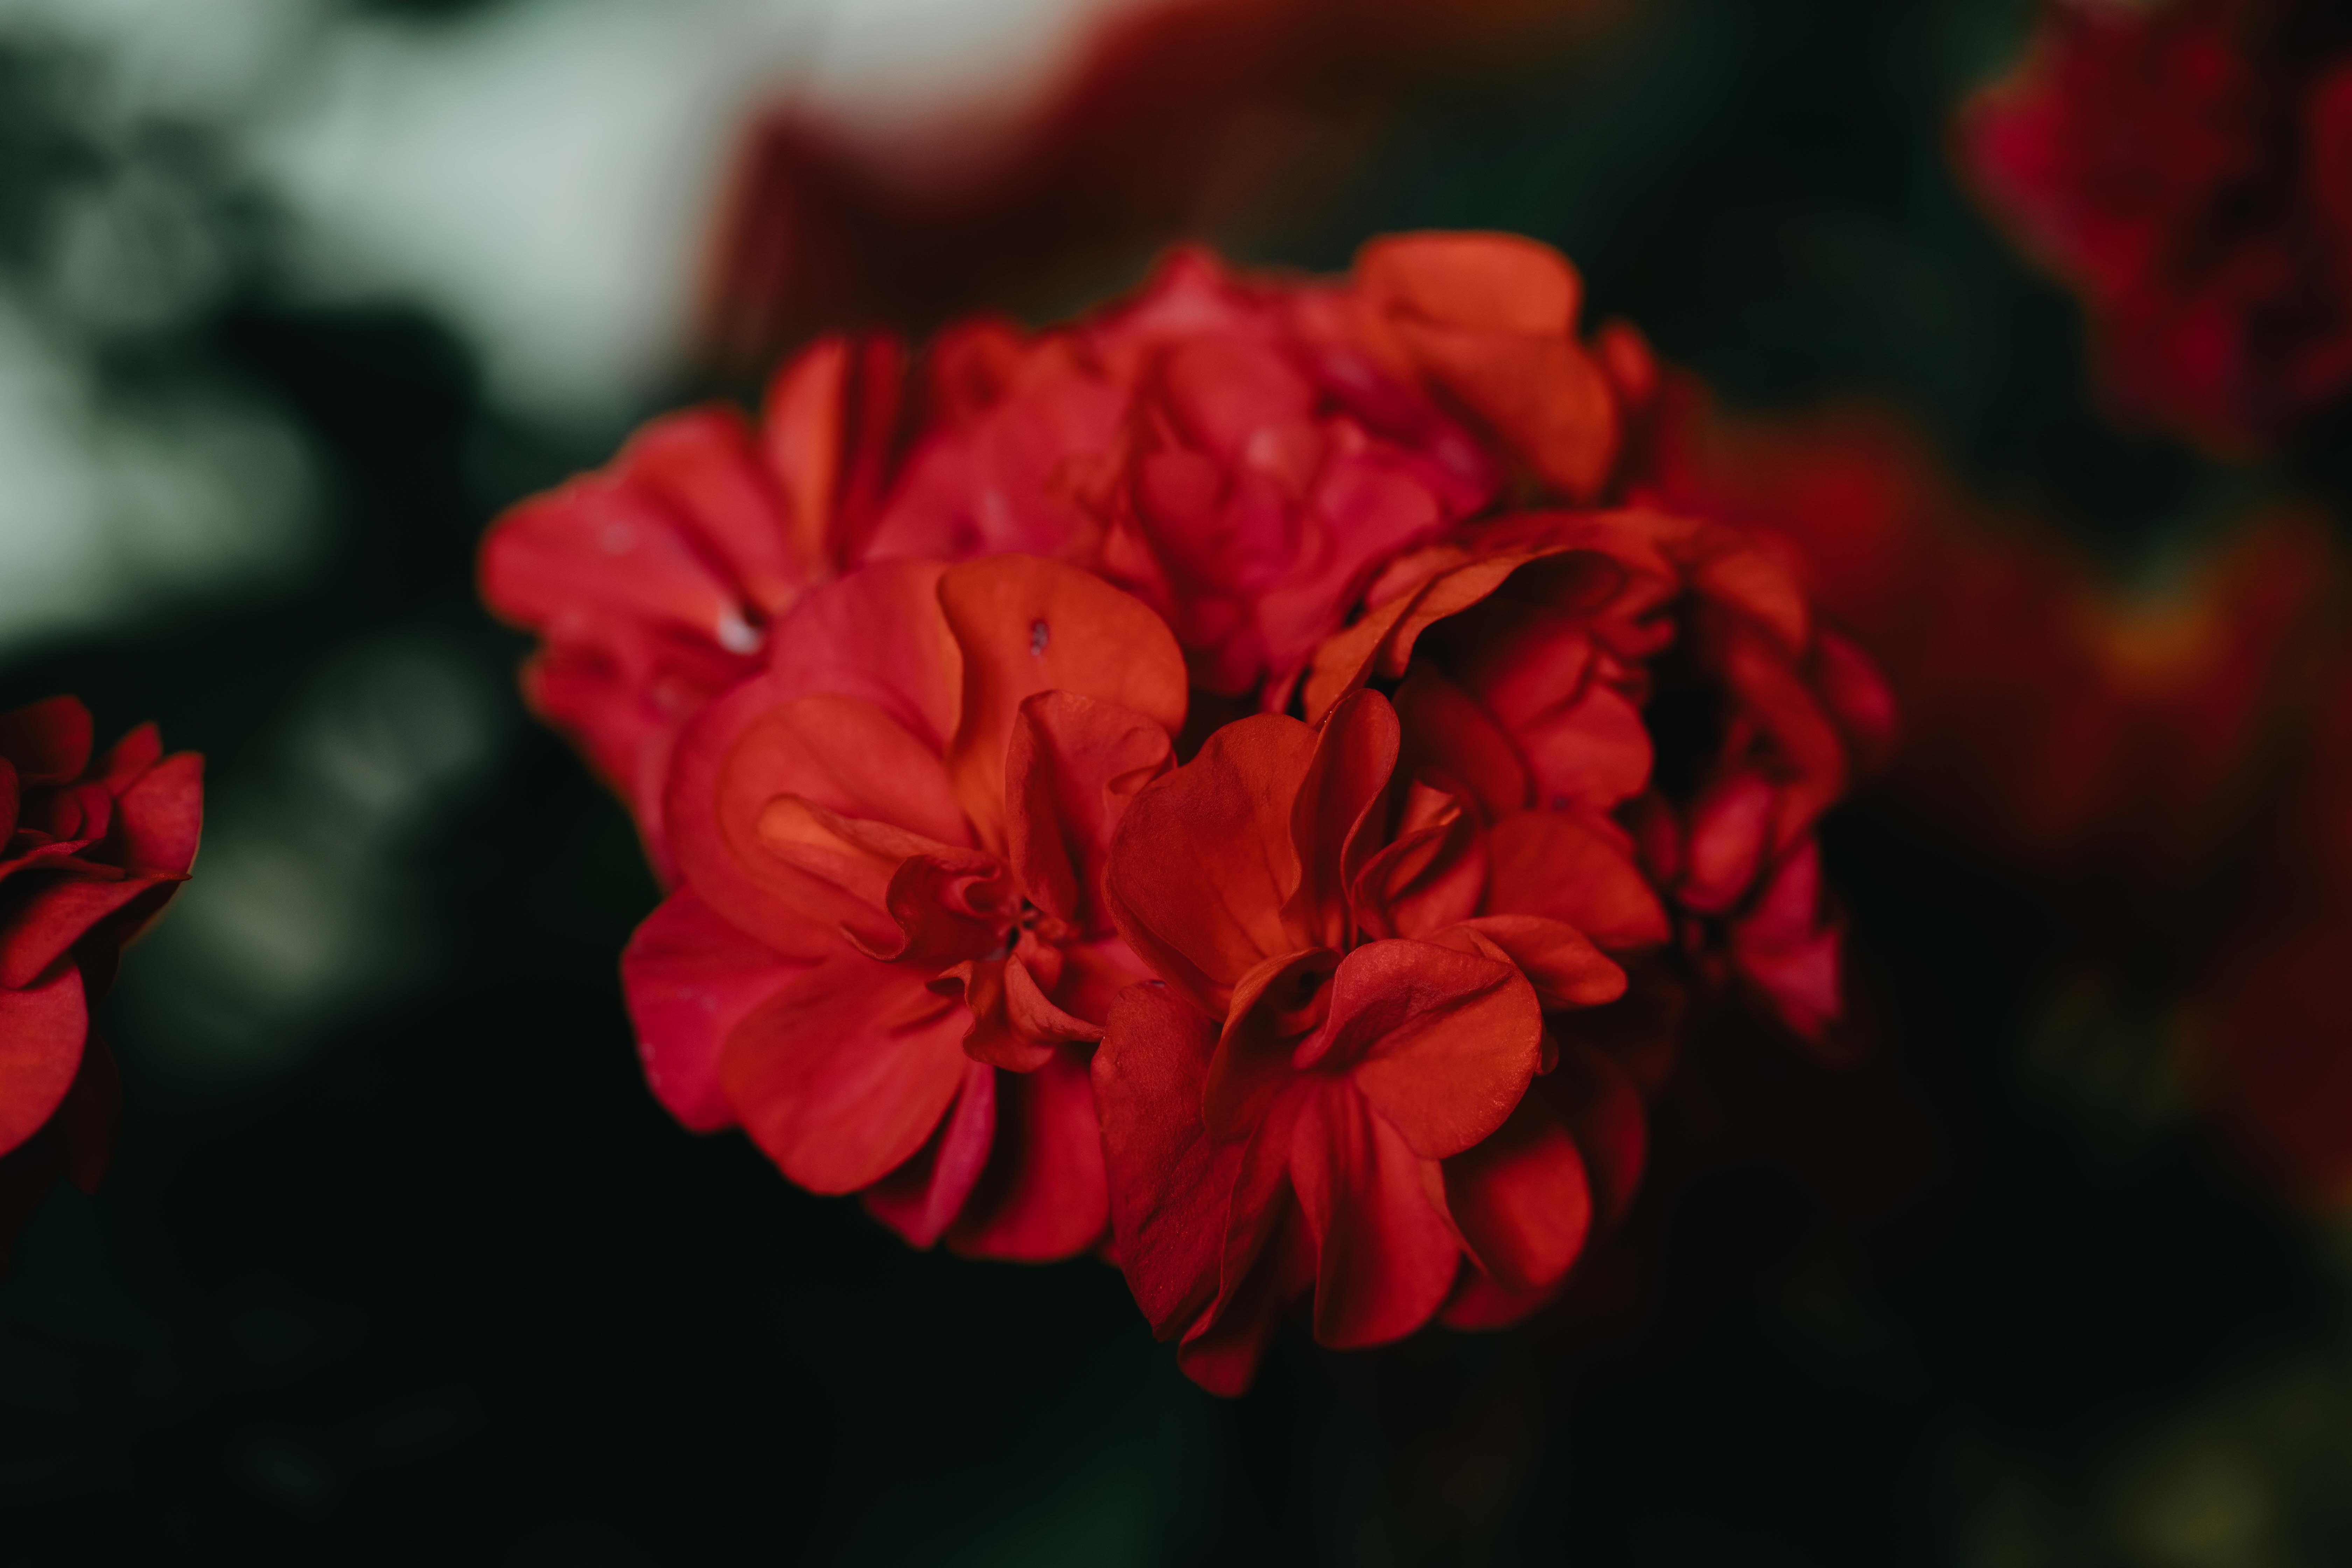 red geranium